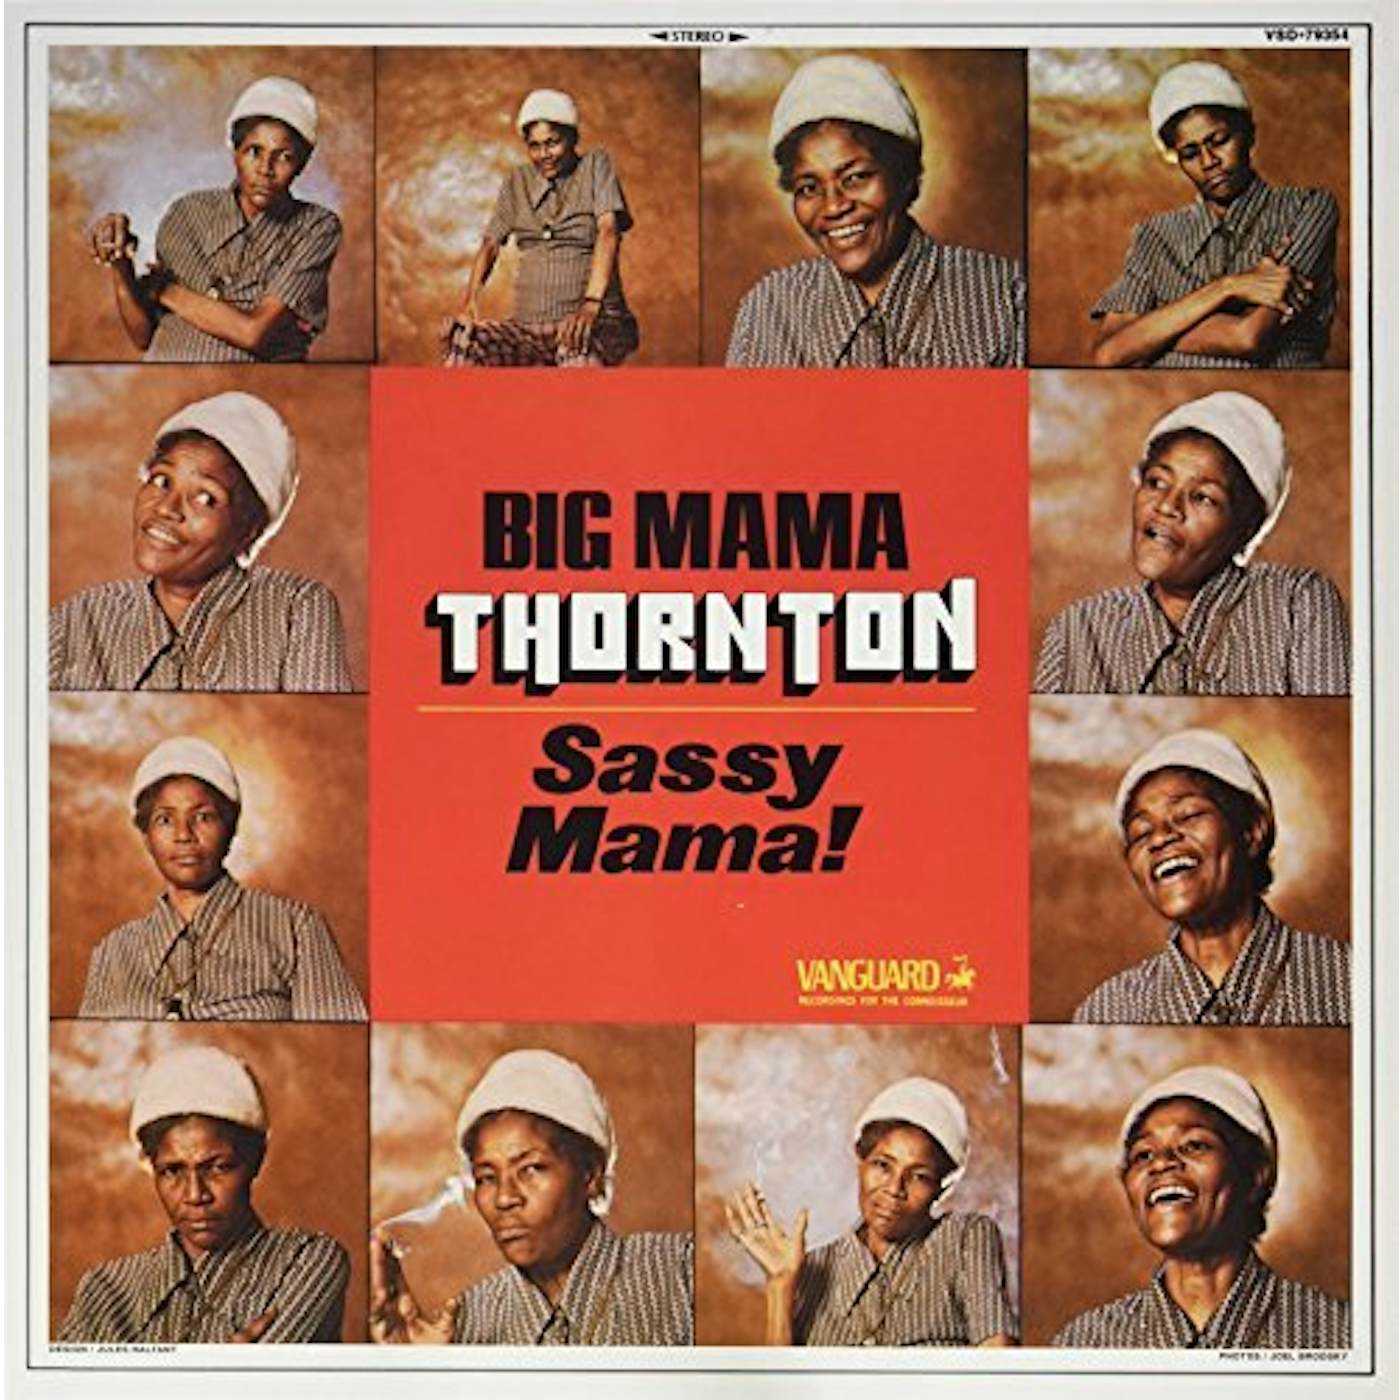 Big Mama Thornton Sassy Mama Vinyl Record